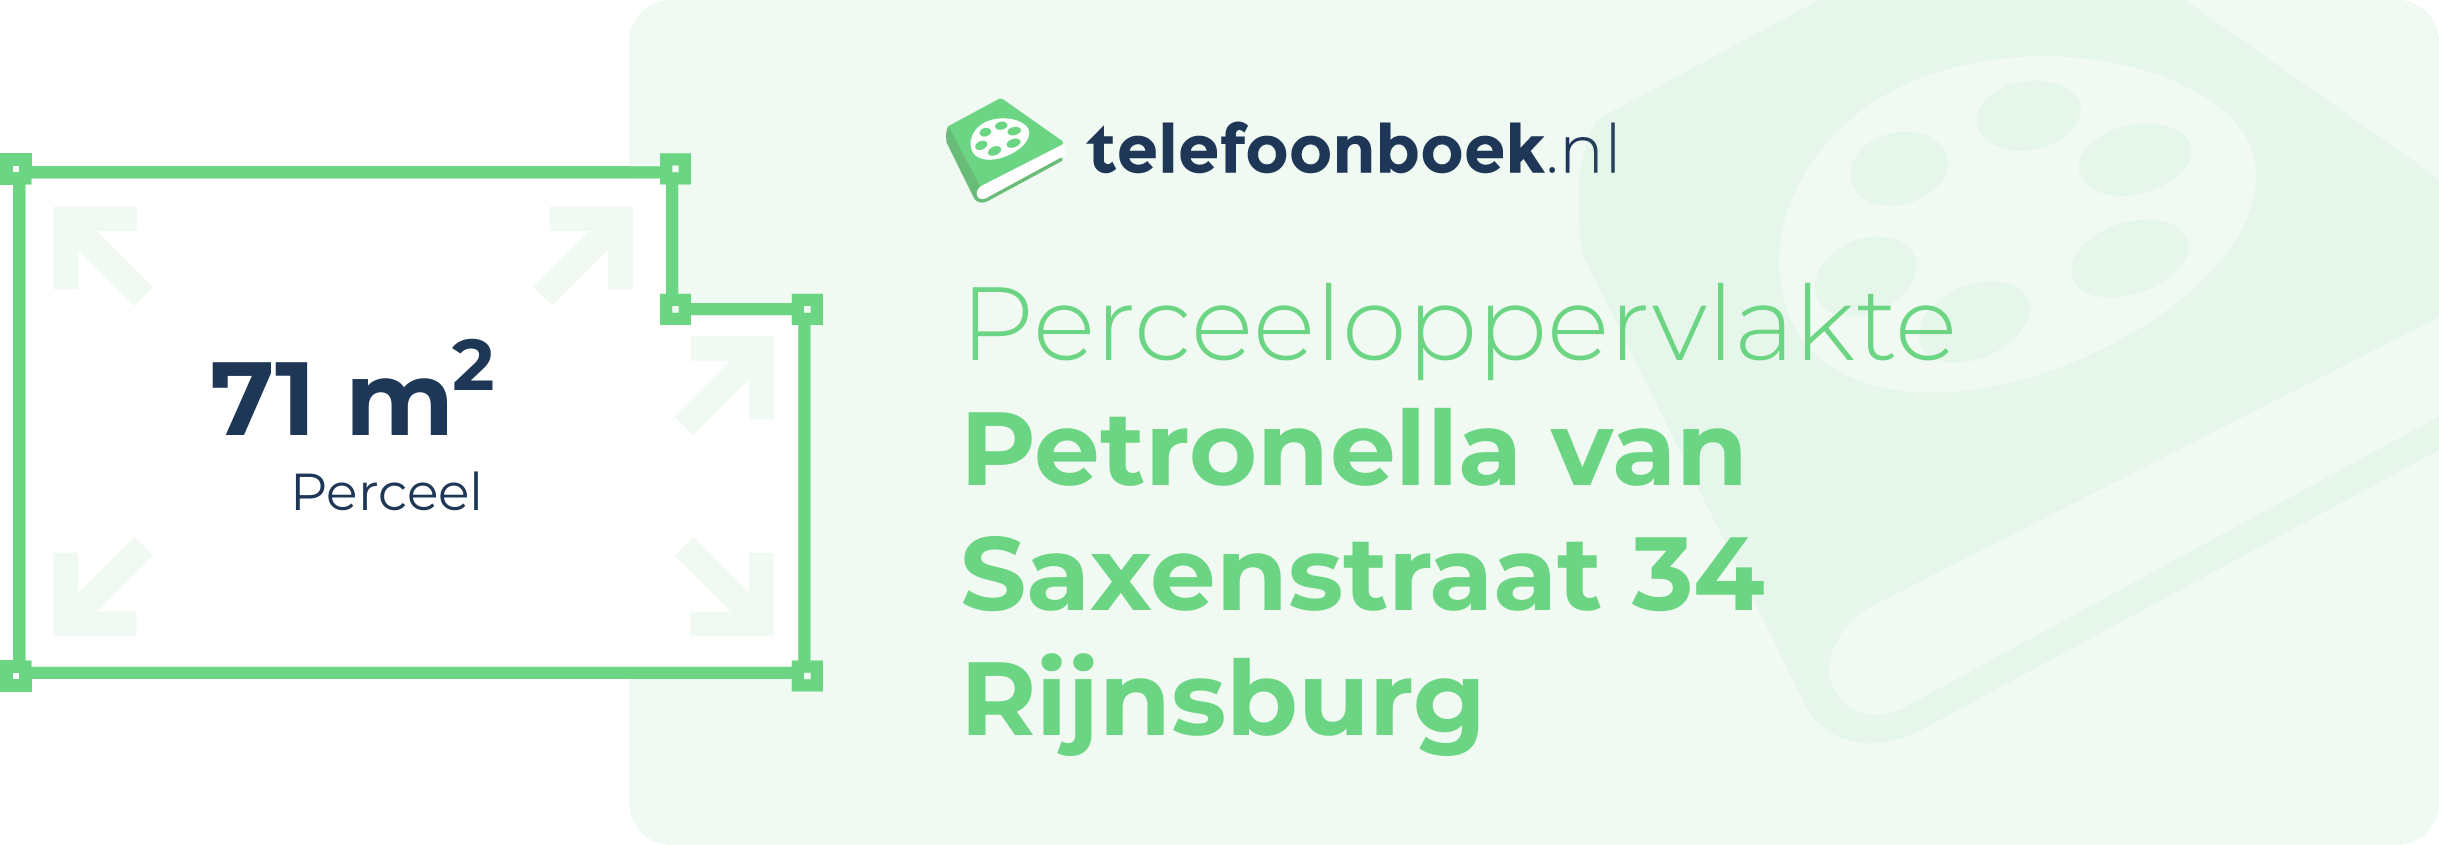 Perceeloppervlakte Petronella Van Saxenstraat 34 Rijnsburg